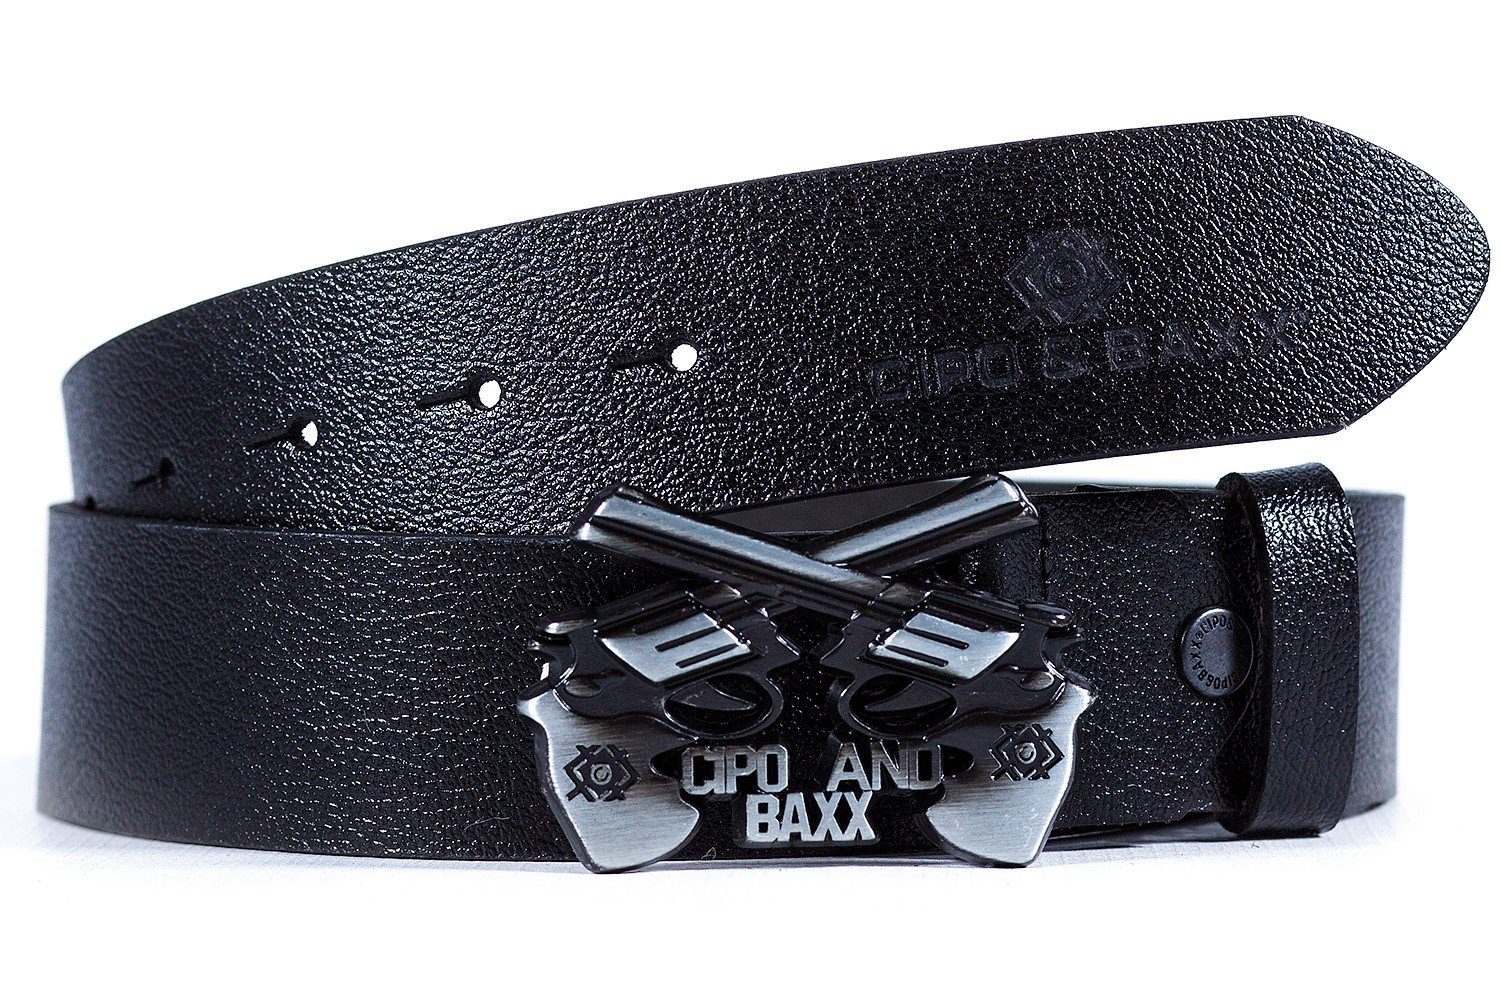 Cipo & Casual Schnalle schwarz Ledergürtel von mit BA-CG148 in Gürtel einer Baxx Pistolen Form